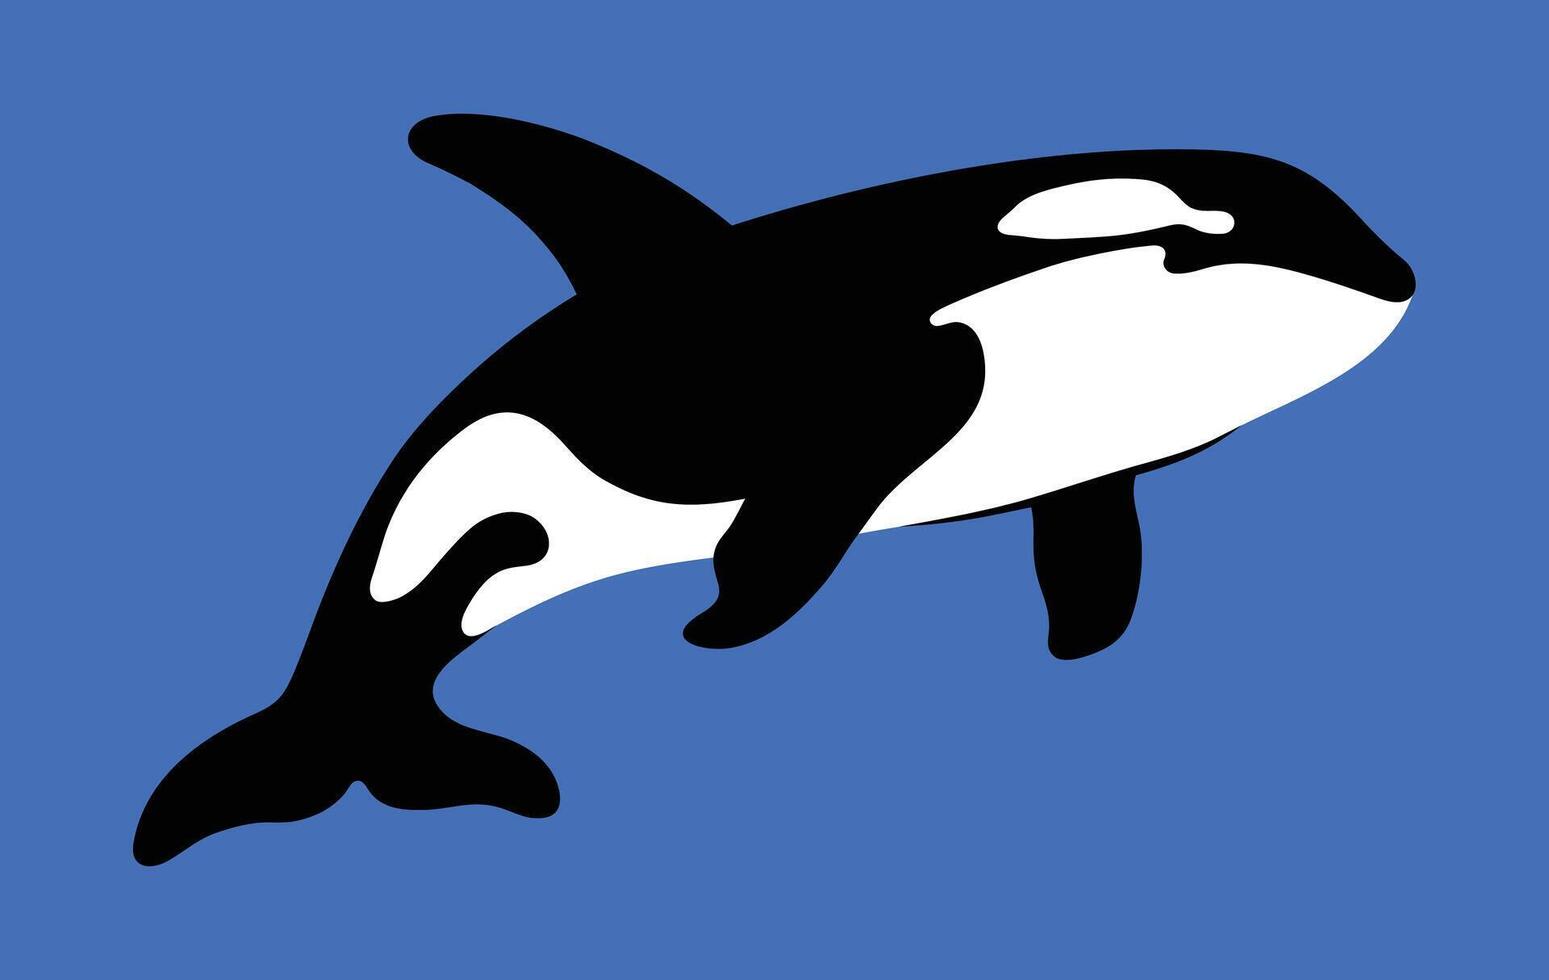 schwarz und Weiß Schablone Silhouette von ein Orca Über Blau Wasser Hintergrund vektor